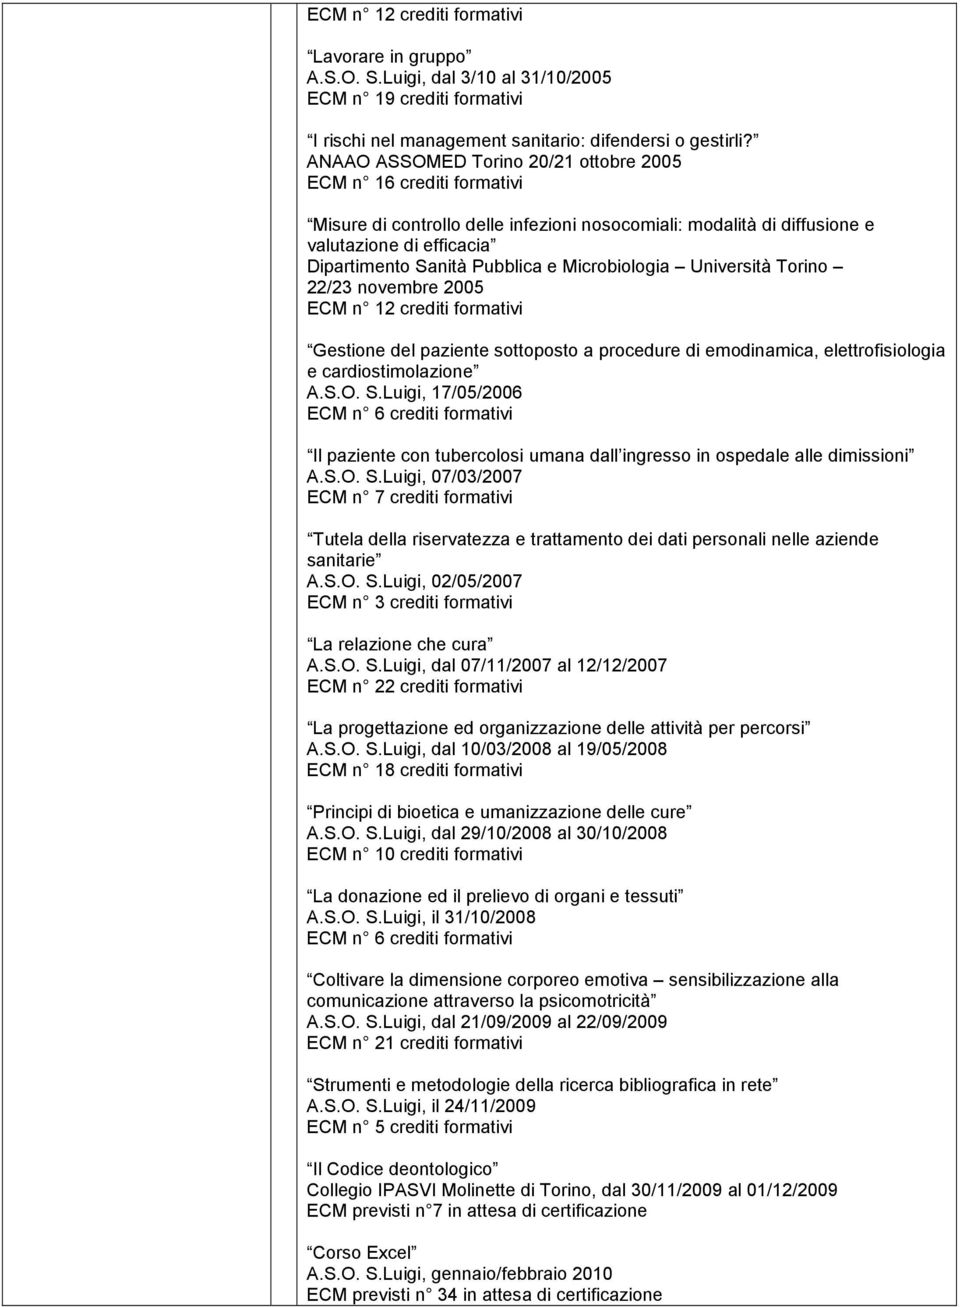 Microbiologia Università Torino 22/23 novembre 2005 ECM n 12 crediti formativi Gestione del paziente sottoposto a procedure di emodinamica, elettrofisiologia e cardiostimolazione A.S.O. S.